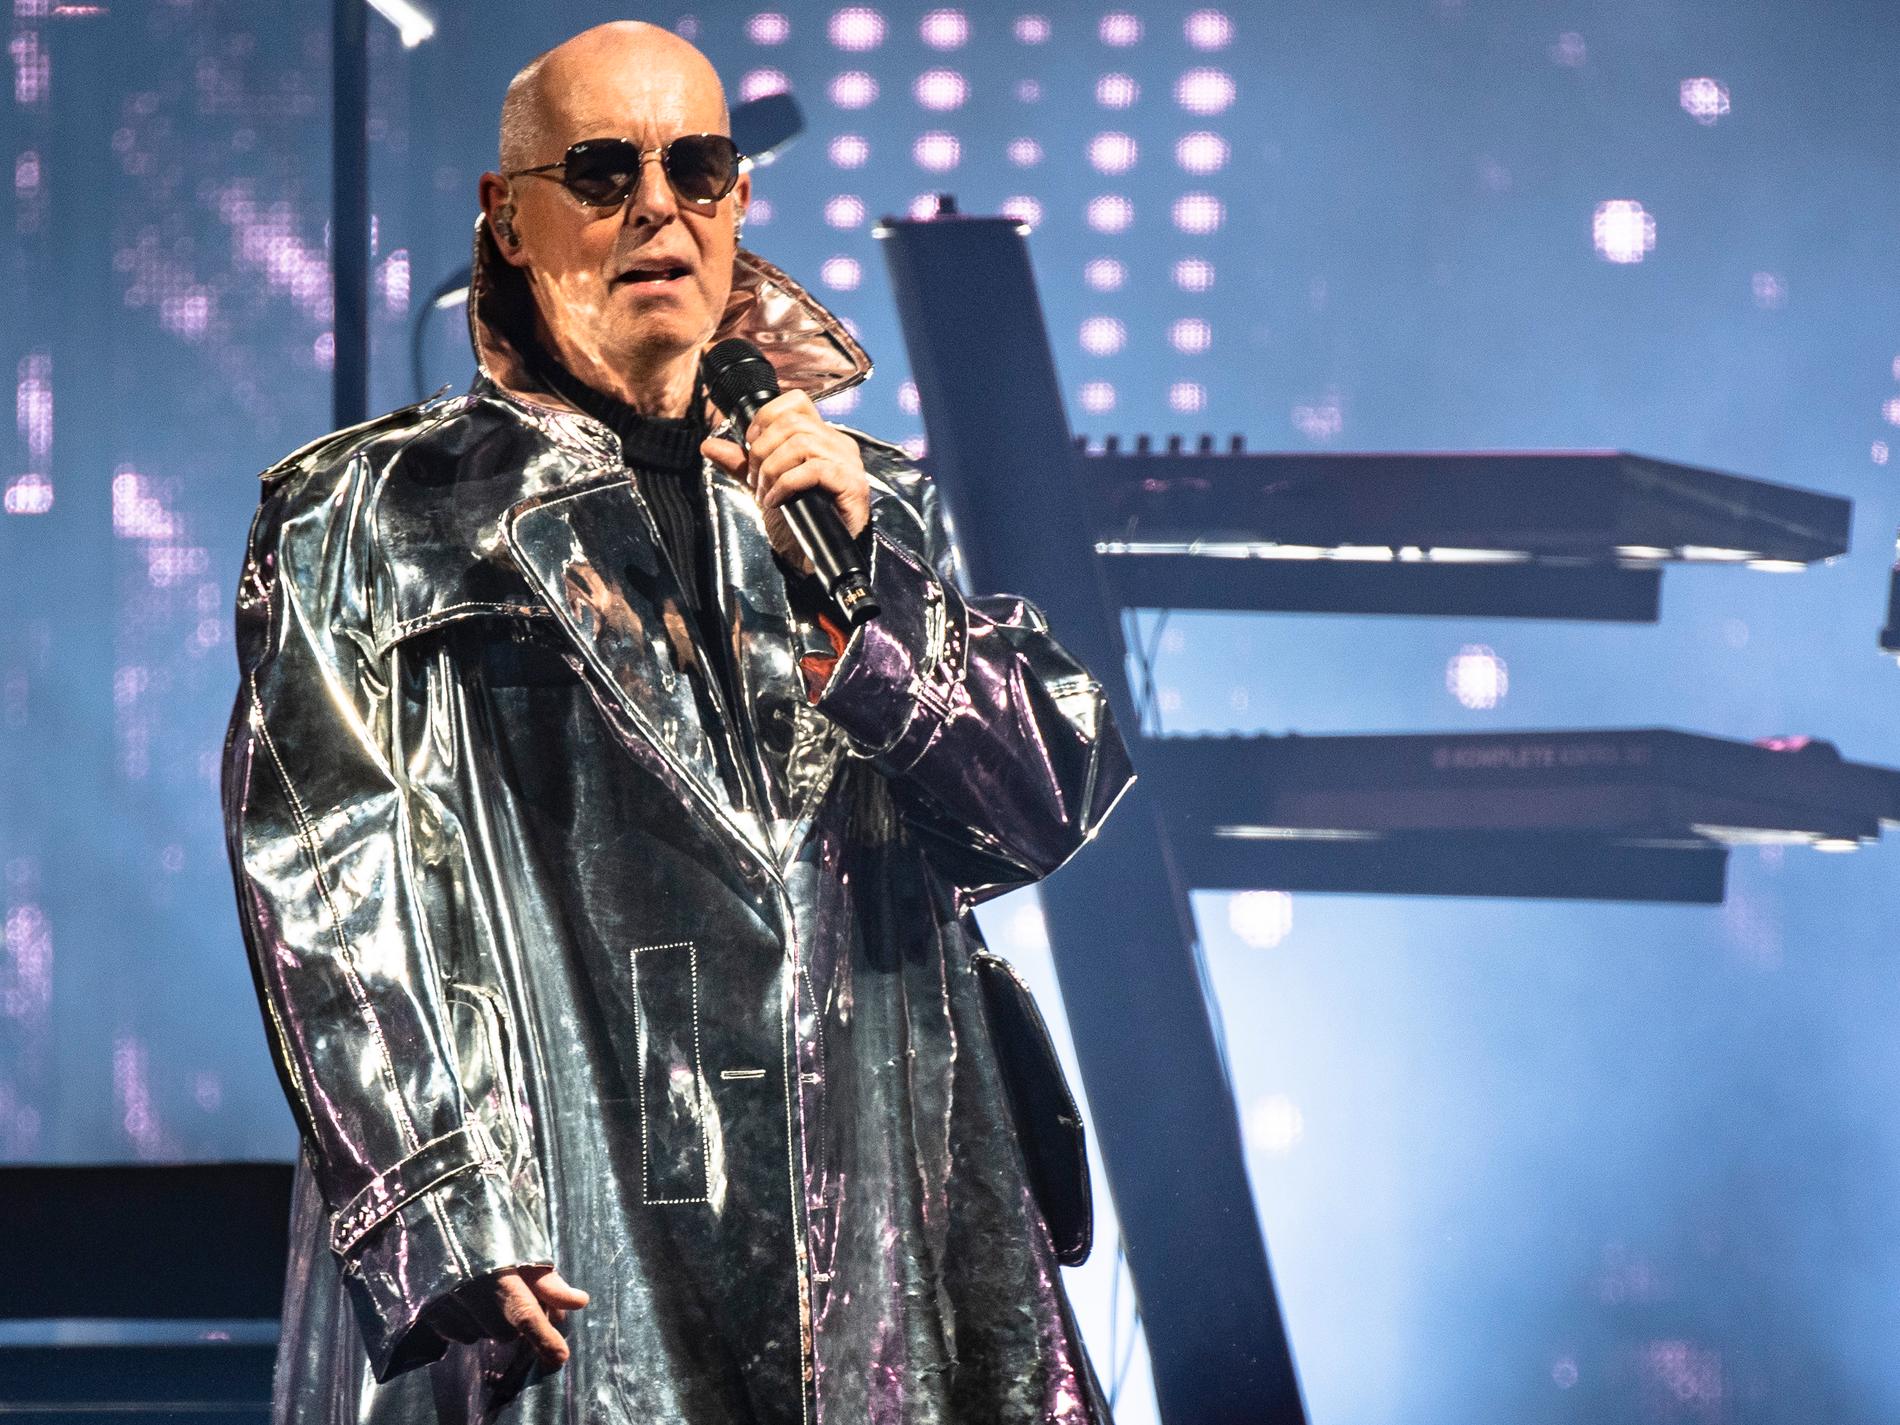 Pet Shop Boys texter låter ännu bättre när Neil Tennant sjunger dem som 67-åring.